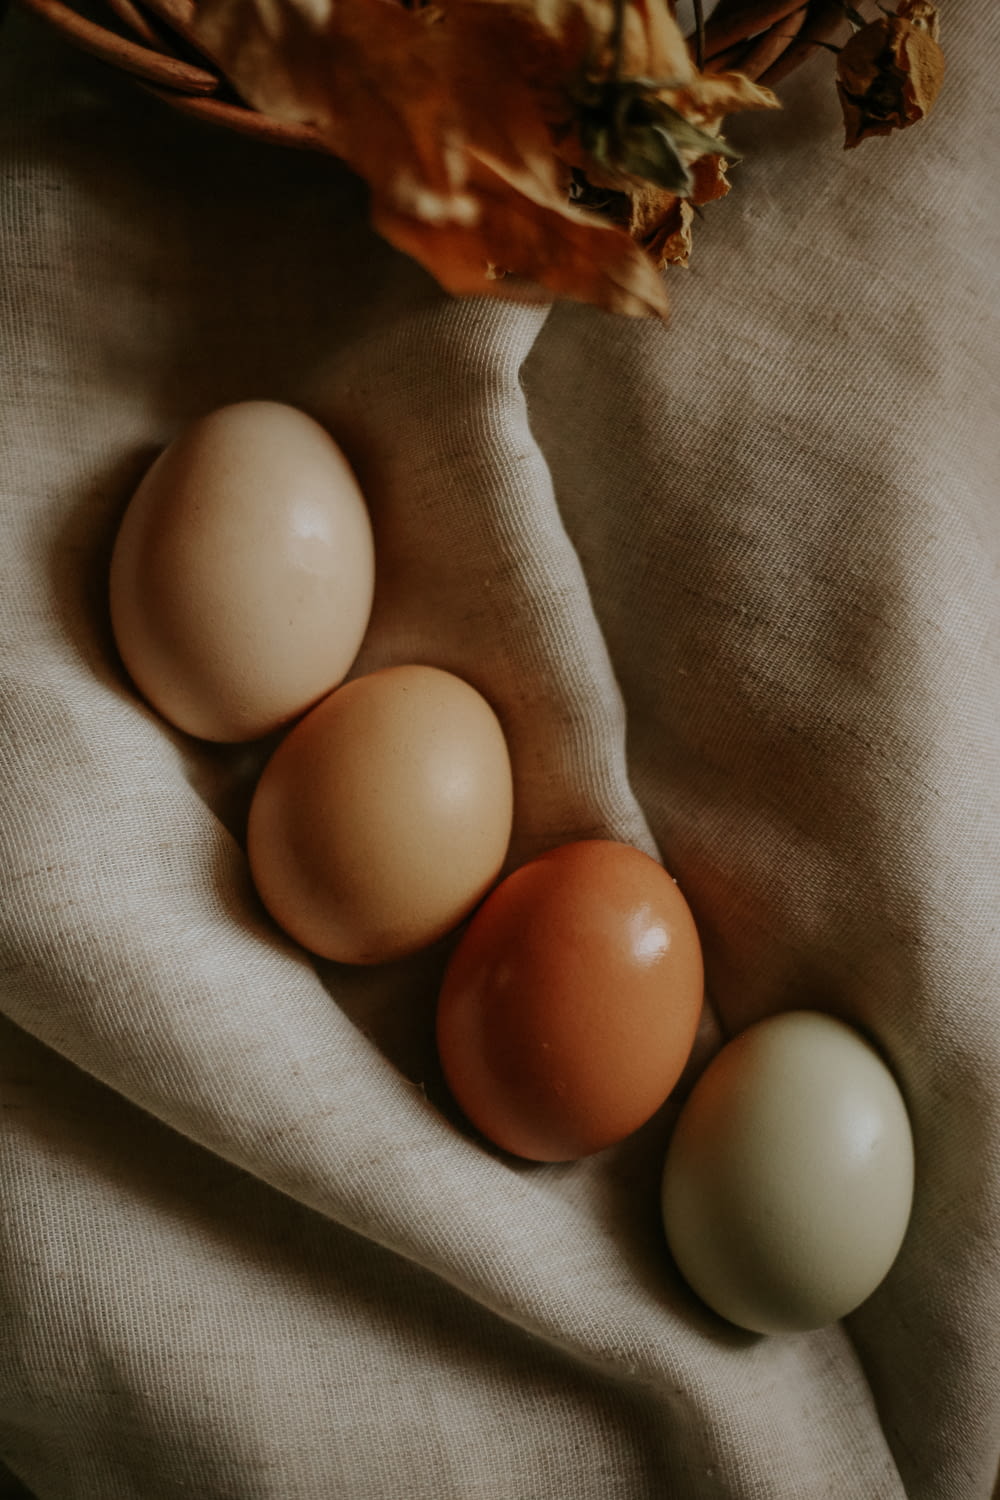 2 white eggs on gray textile